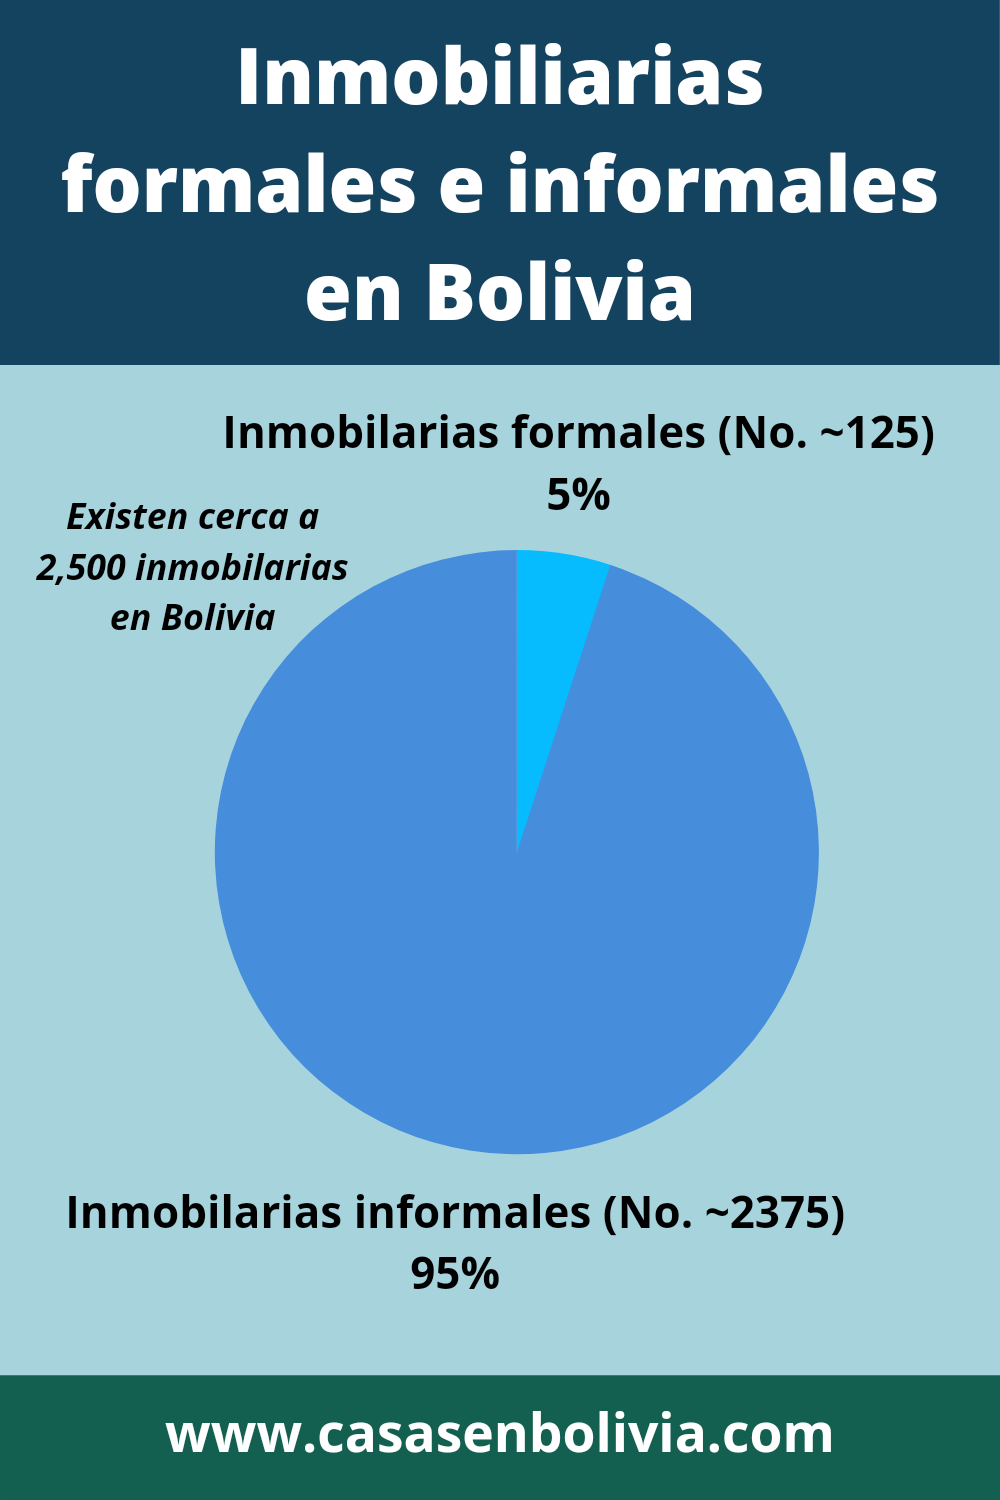 Inmobiliarias formales versus informales en Bolivia